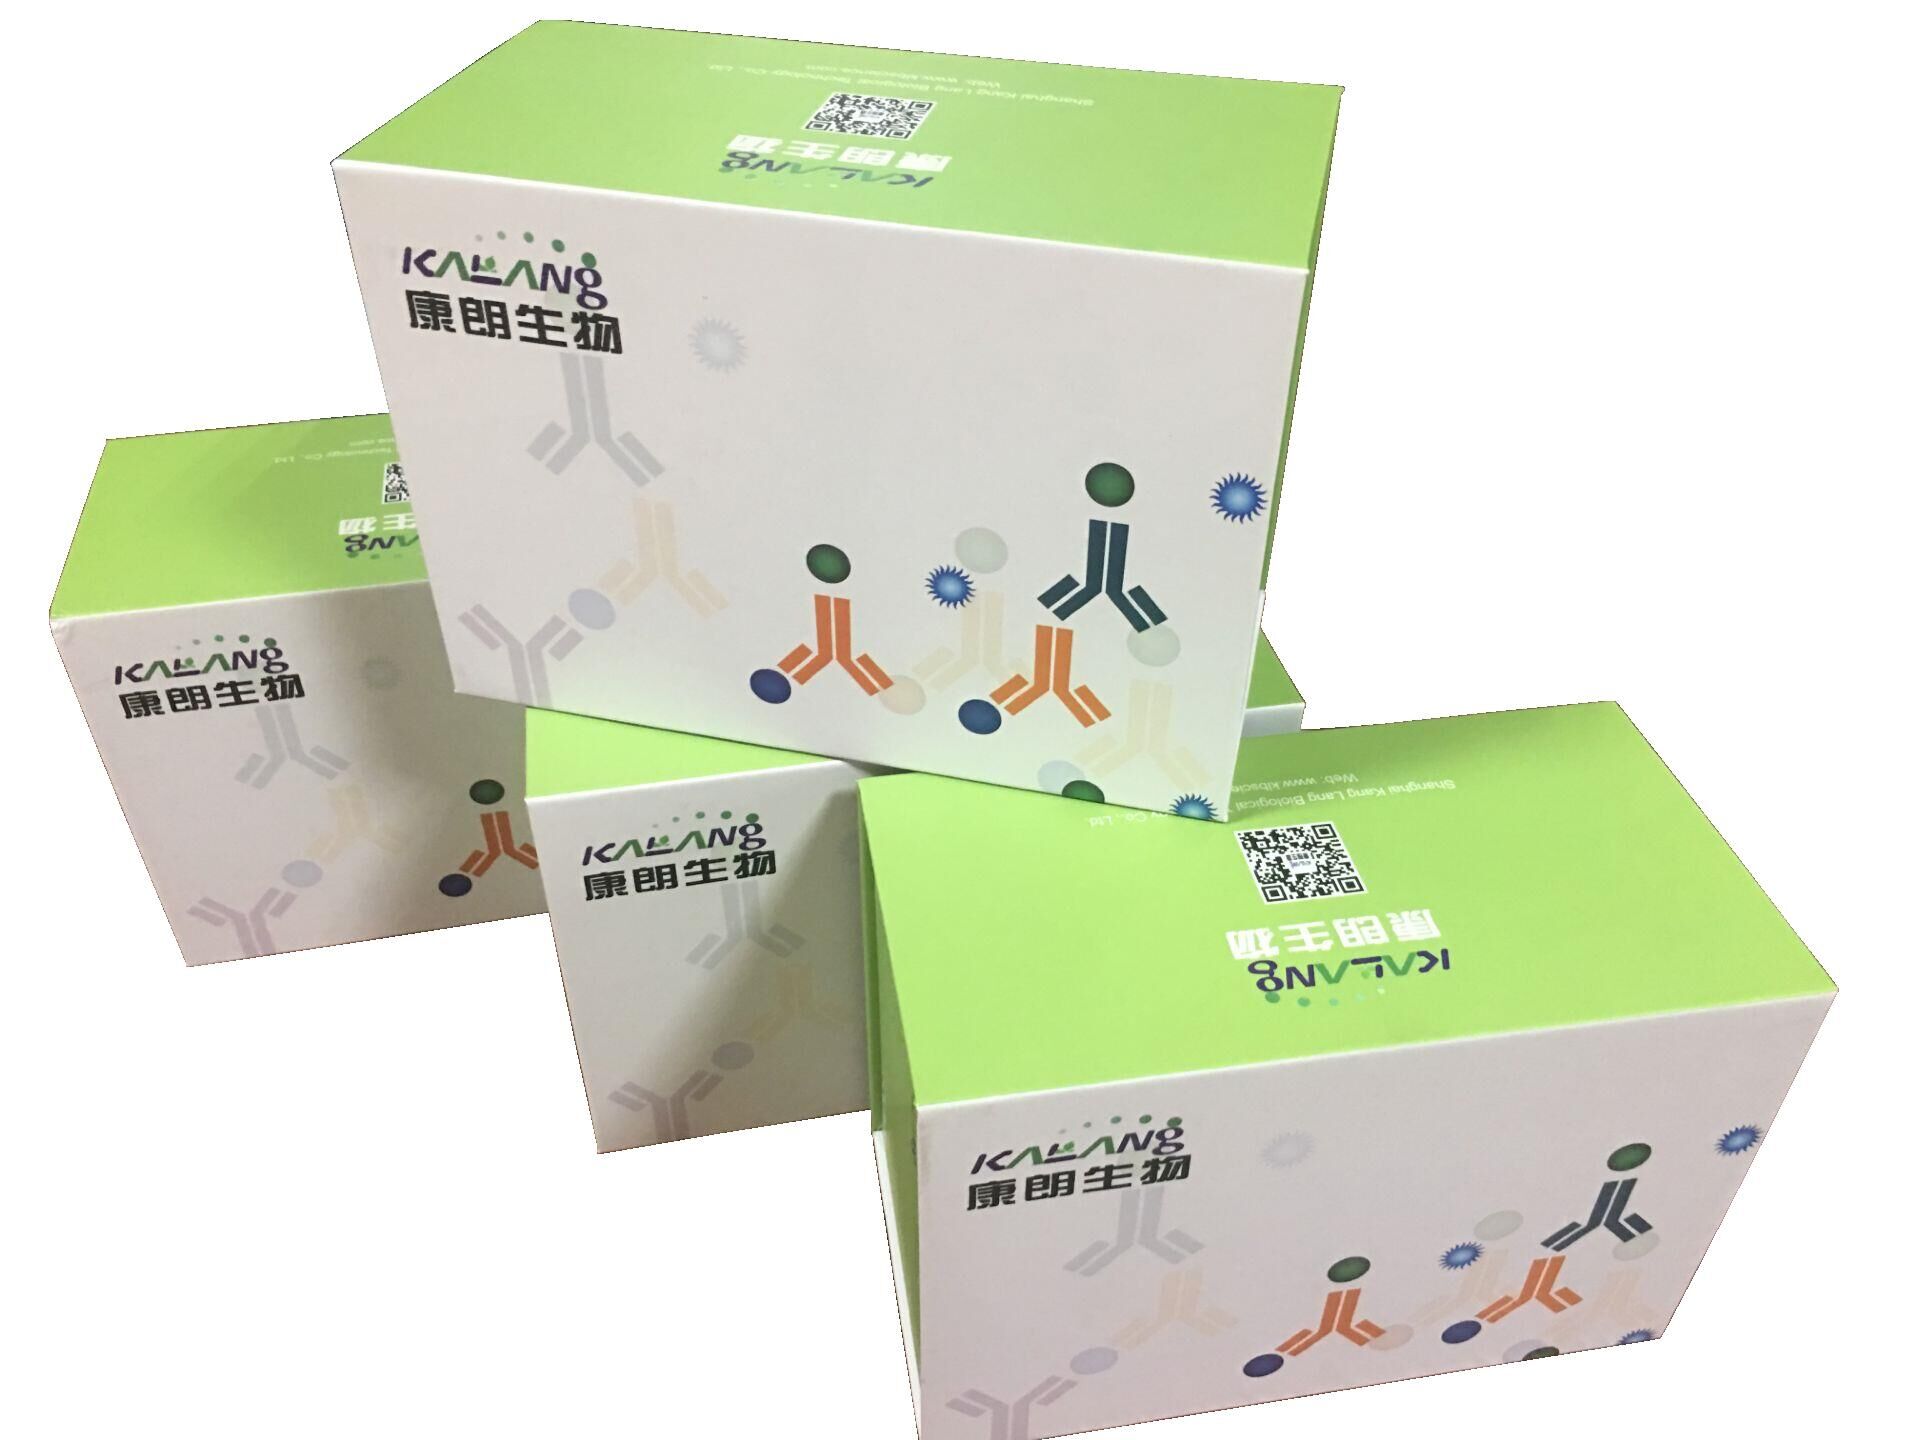 人趋化因子CXCL12酶联免疫试剂盒,Human CXCL12/SDF-1 ELISA KIT